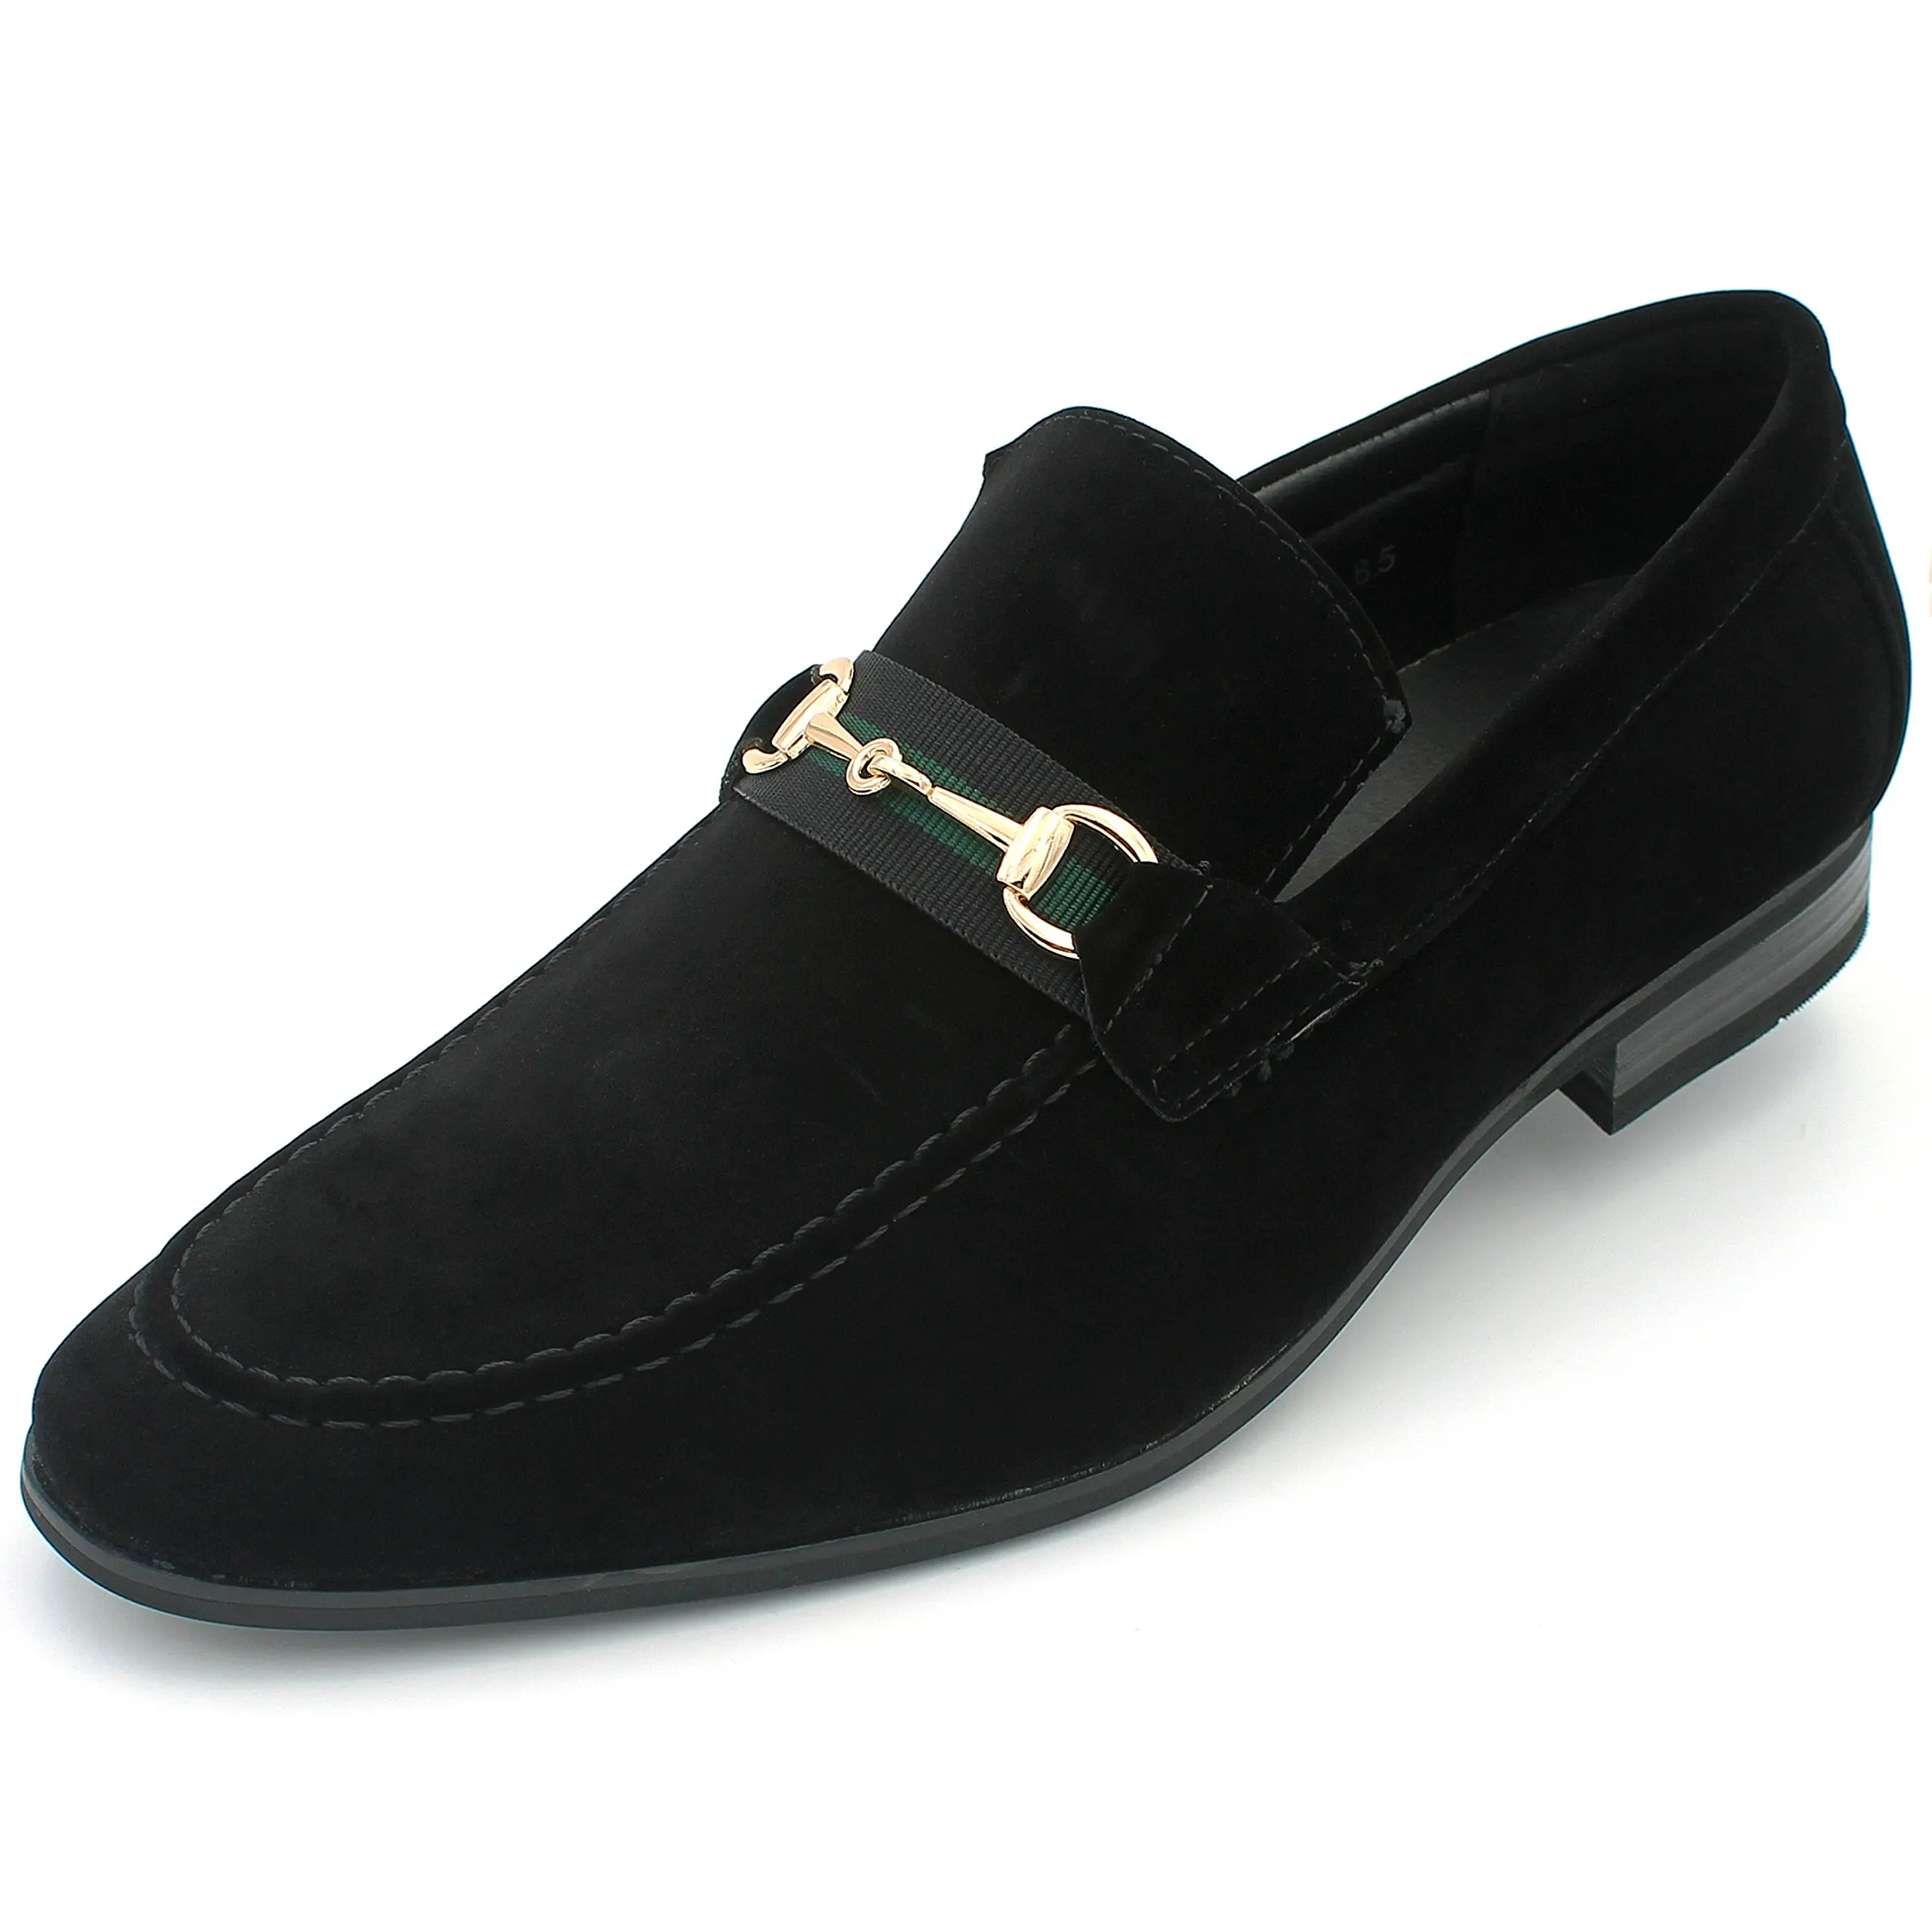 suede black dress shoes